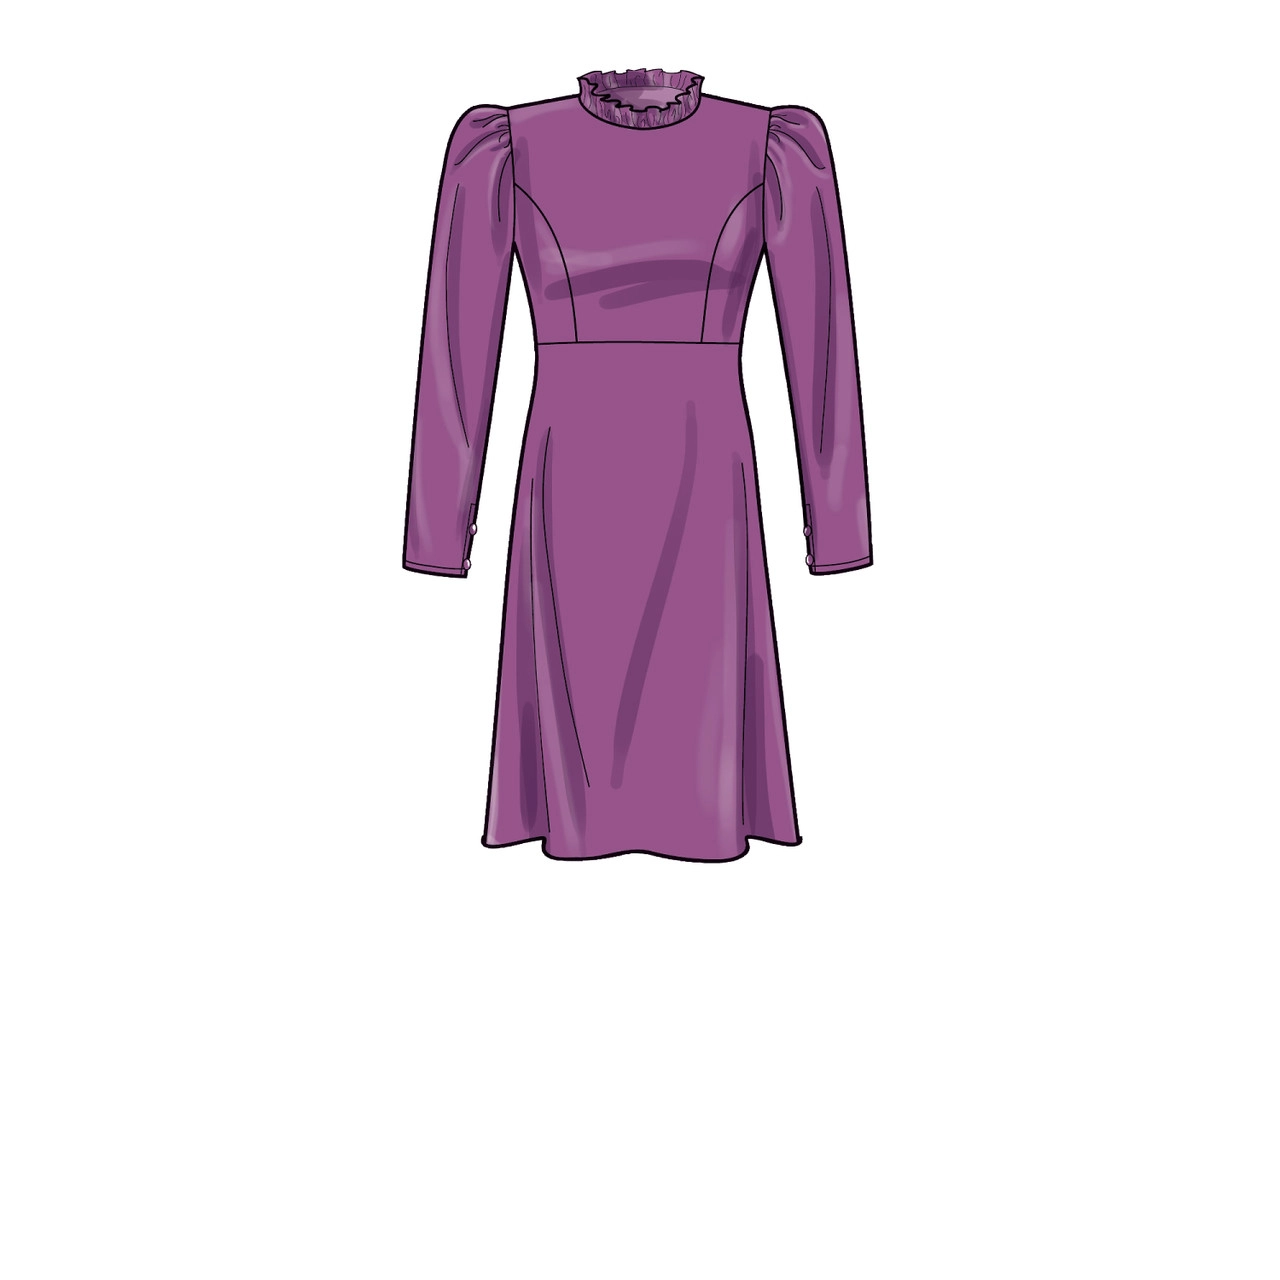 Patron Simplicity 9453 - Robe pour femme du 34 au 52 FR